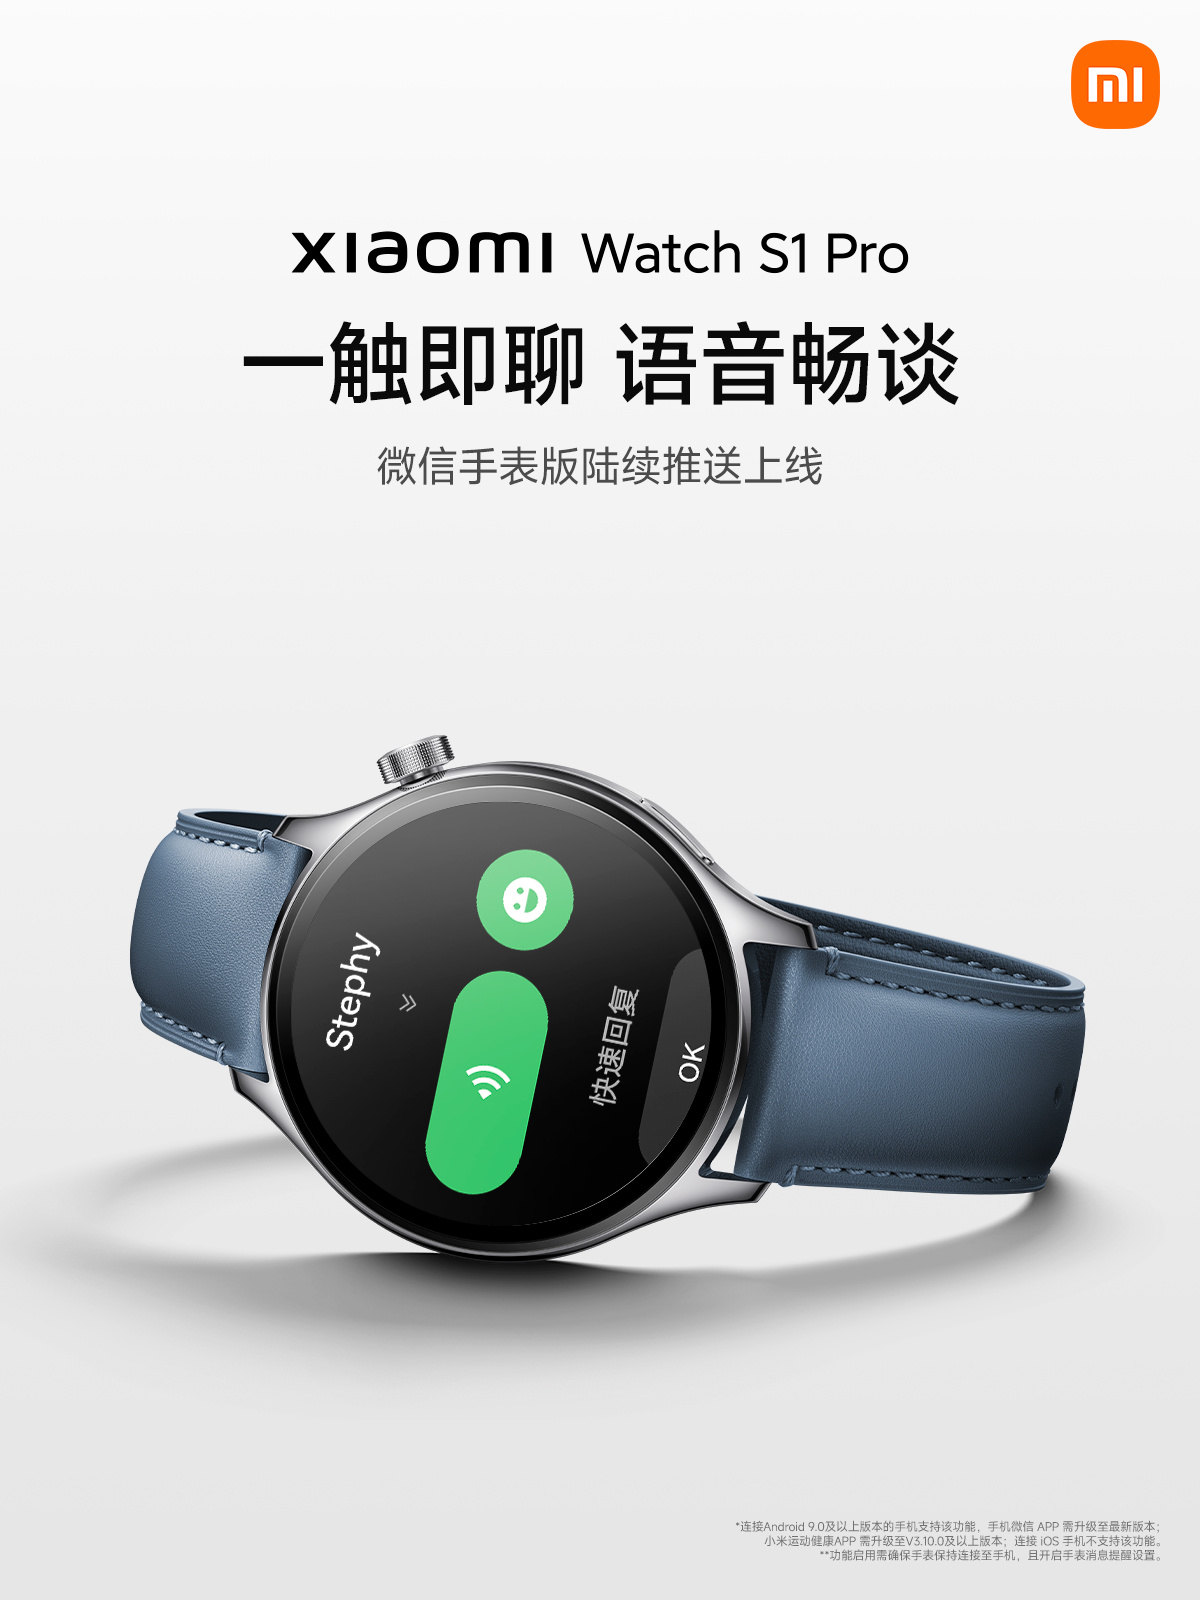 smartwatch Xiaomi Watch S1 Pro nowa aplikacja WeChat